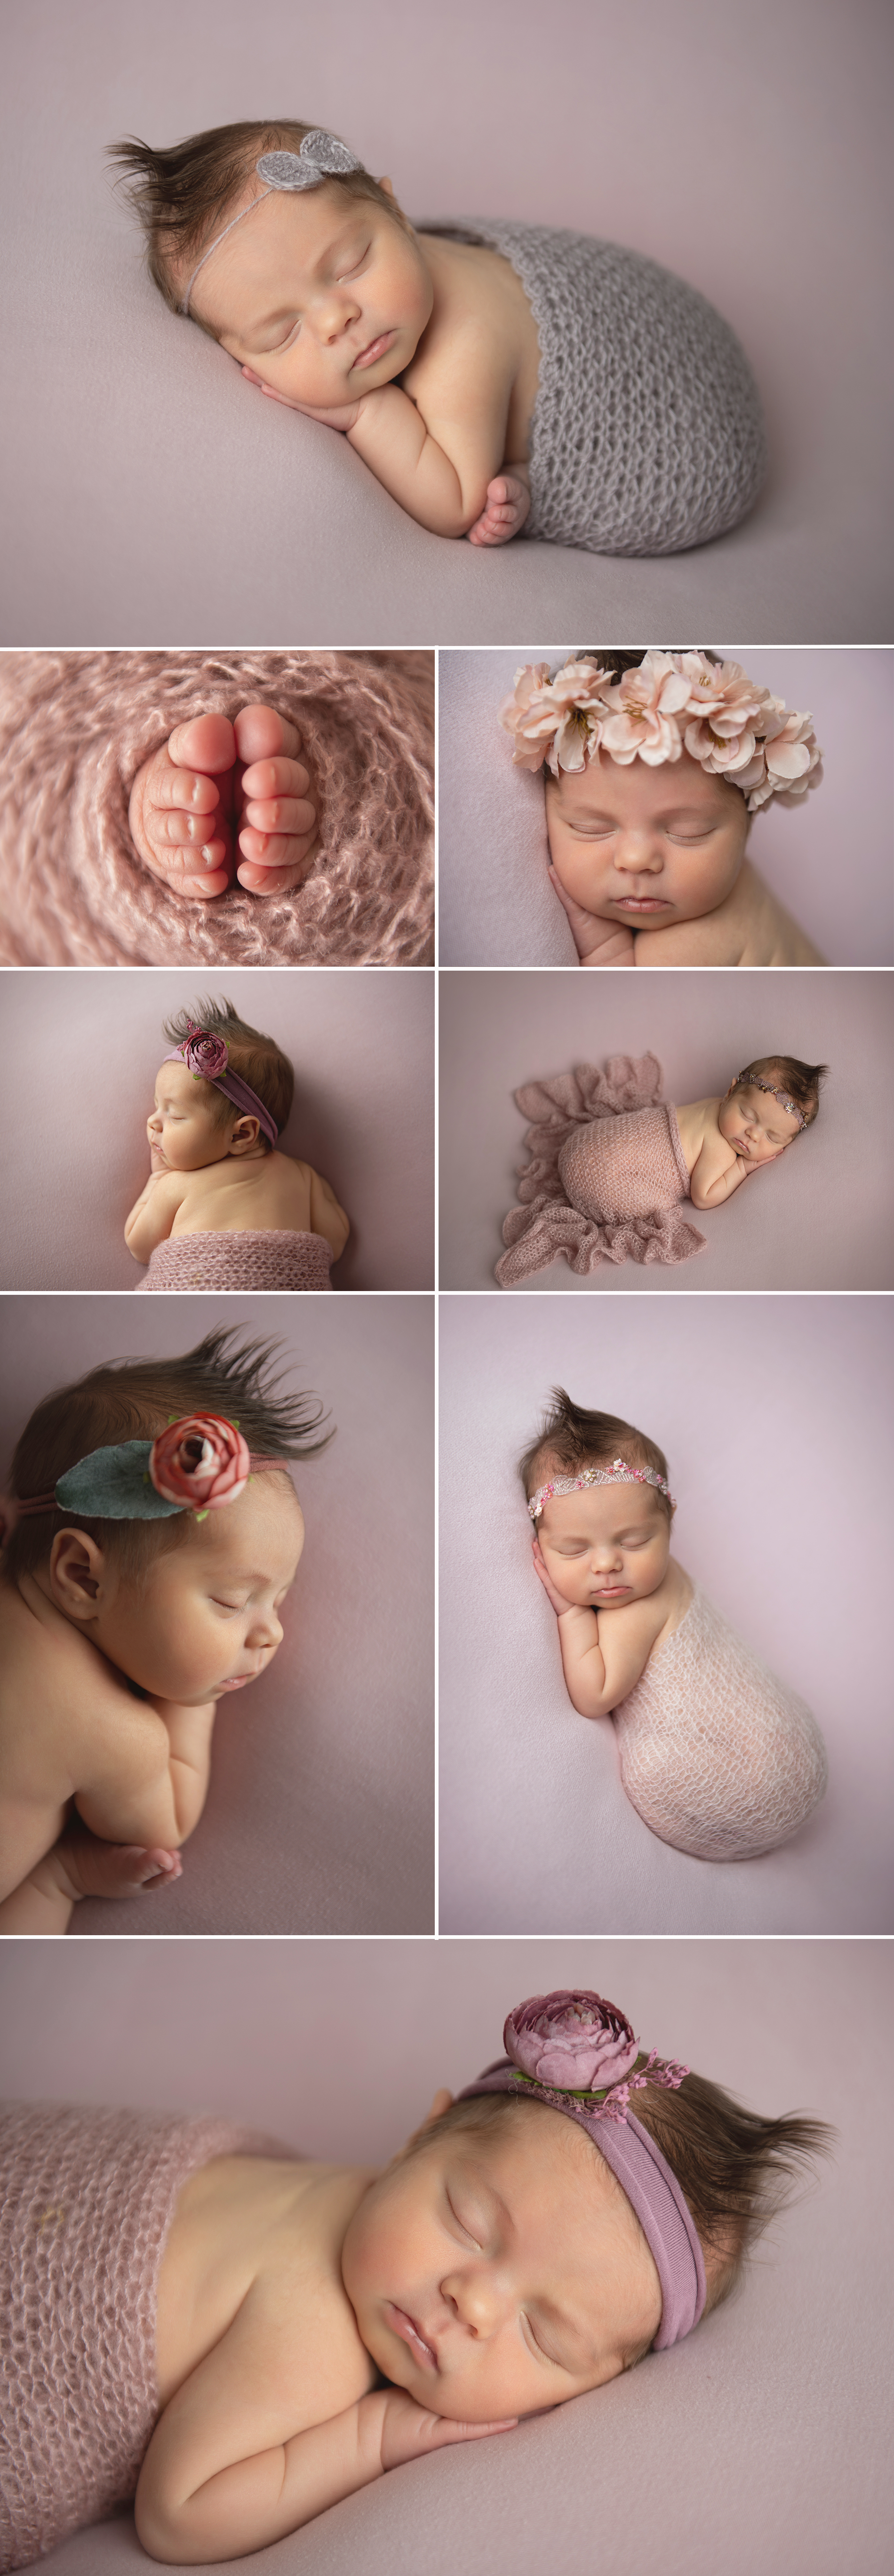 nyc manhattan newborn studio photography